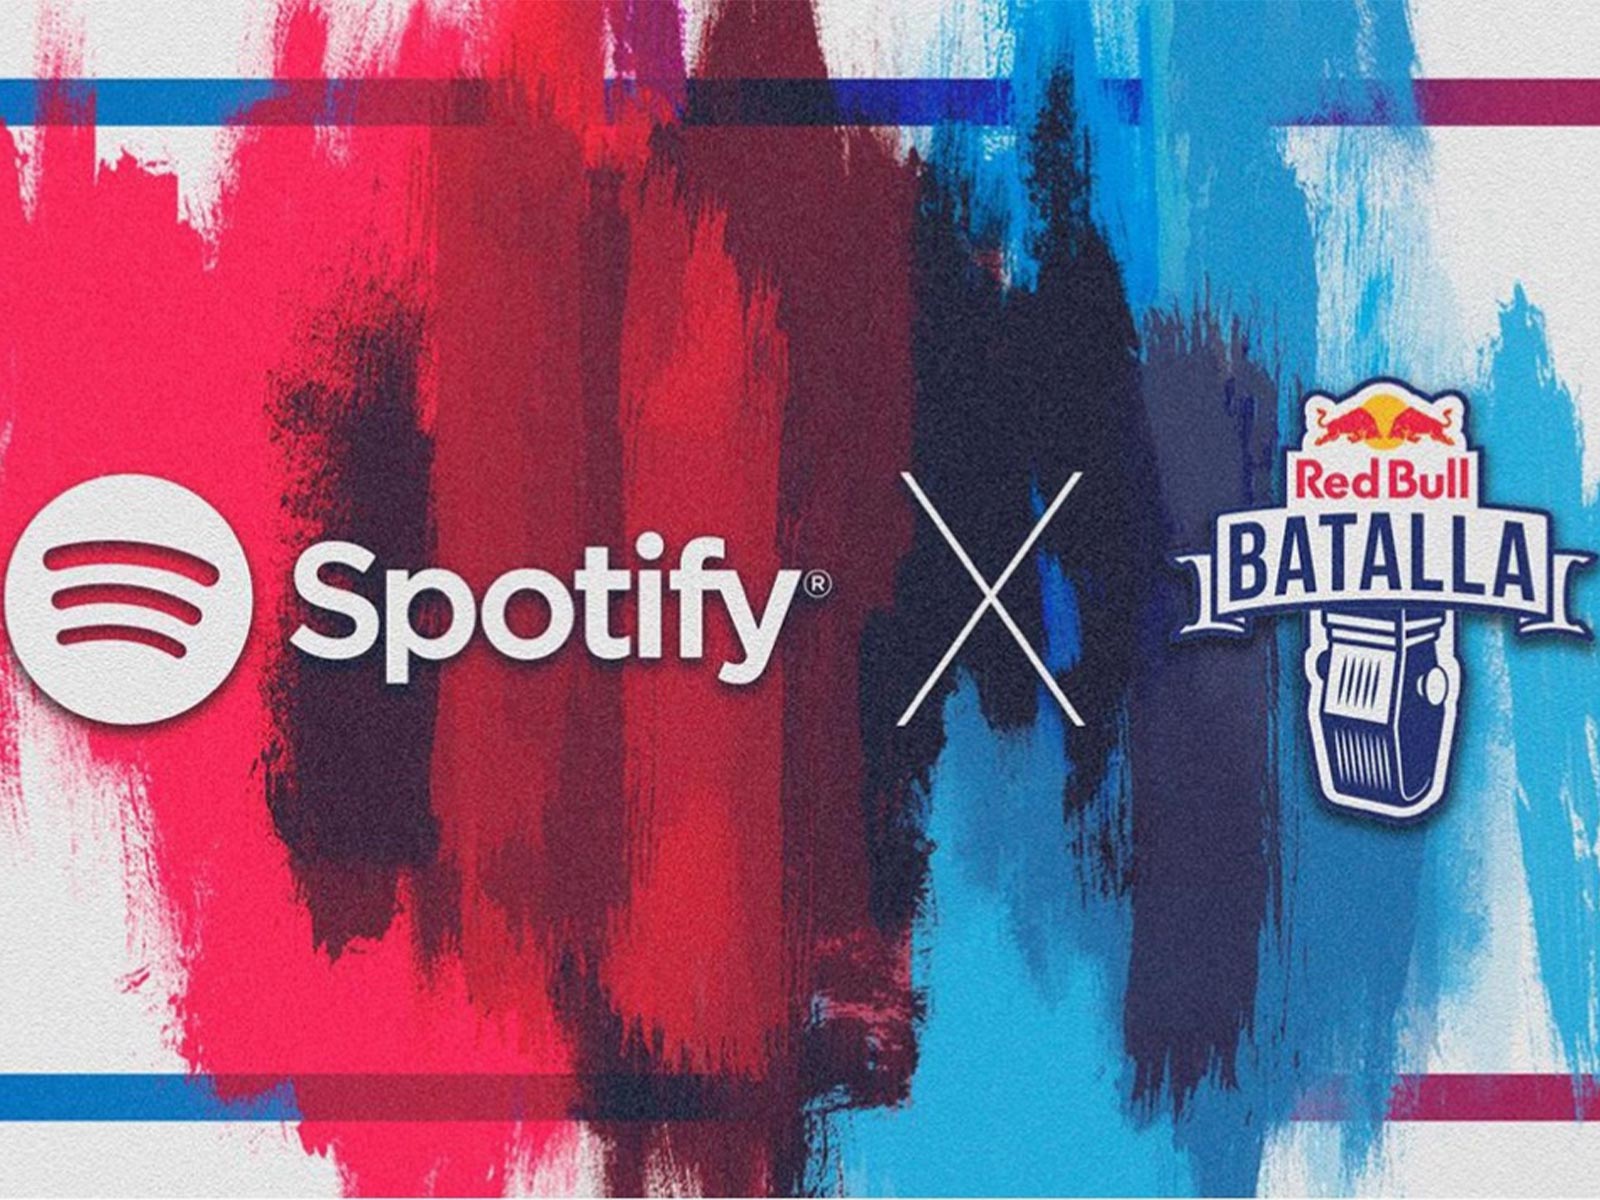 Red Bull Batalla da el salto a Spotify con podcasts, playlists, batallas en audio y mucho más